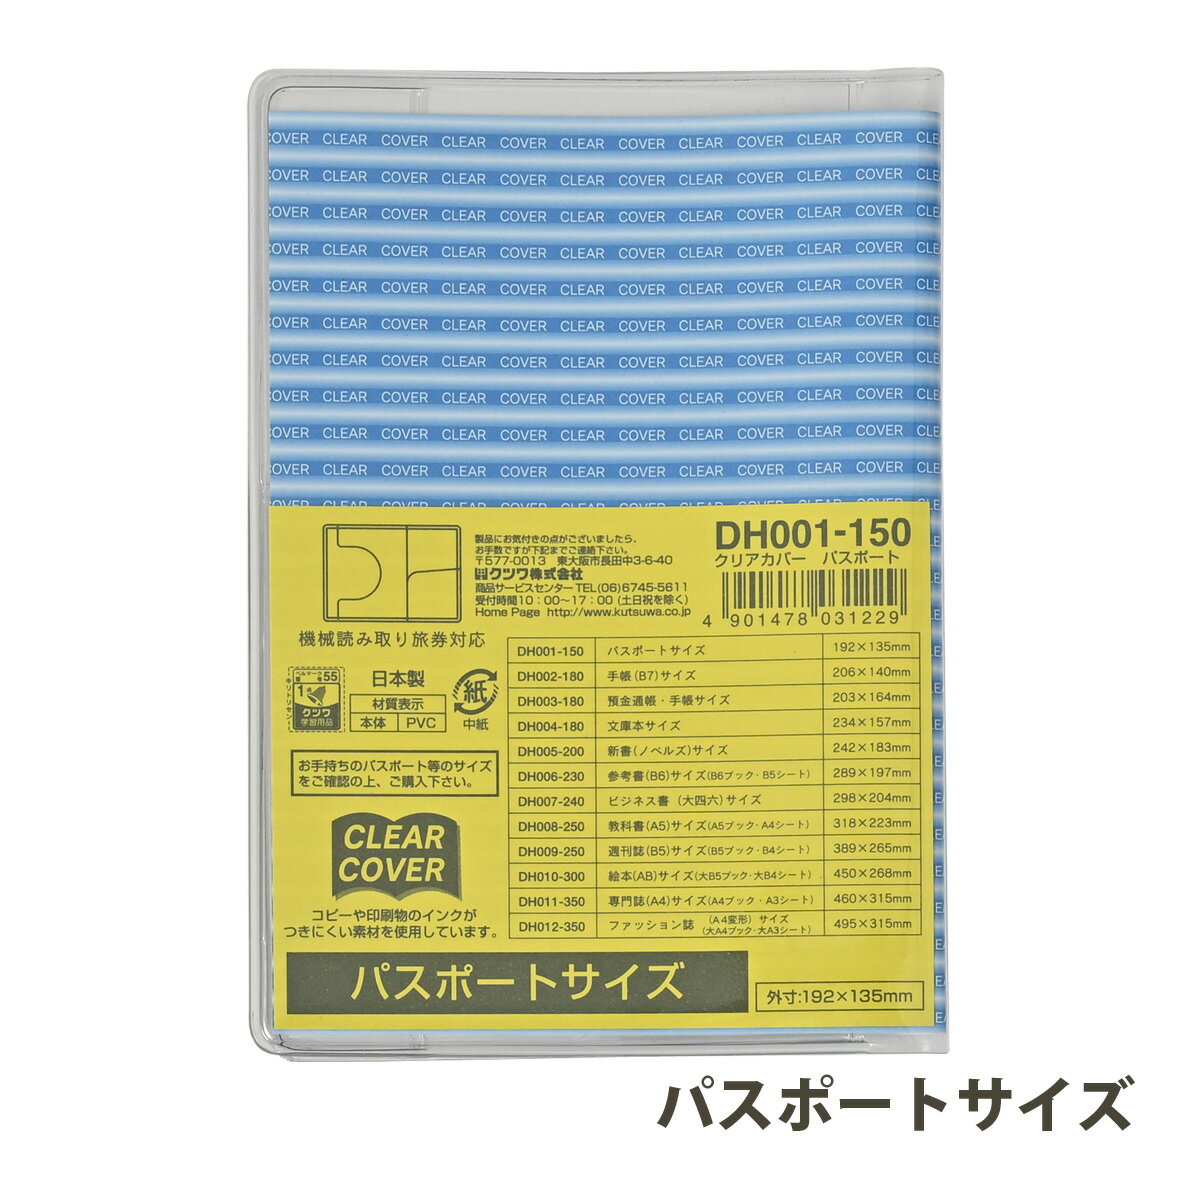 クリアカバー 保険証 パスポートサイズ カード カバー 透明 文具 収納 整理 持ち運び 推しグッズ 日本製